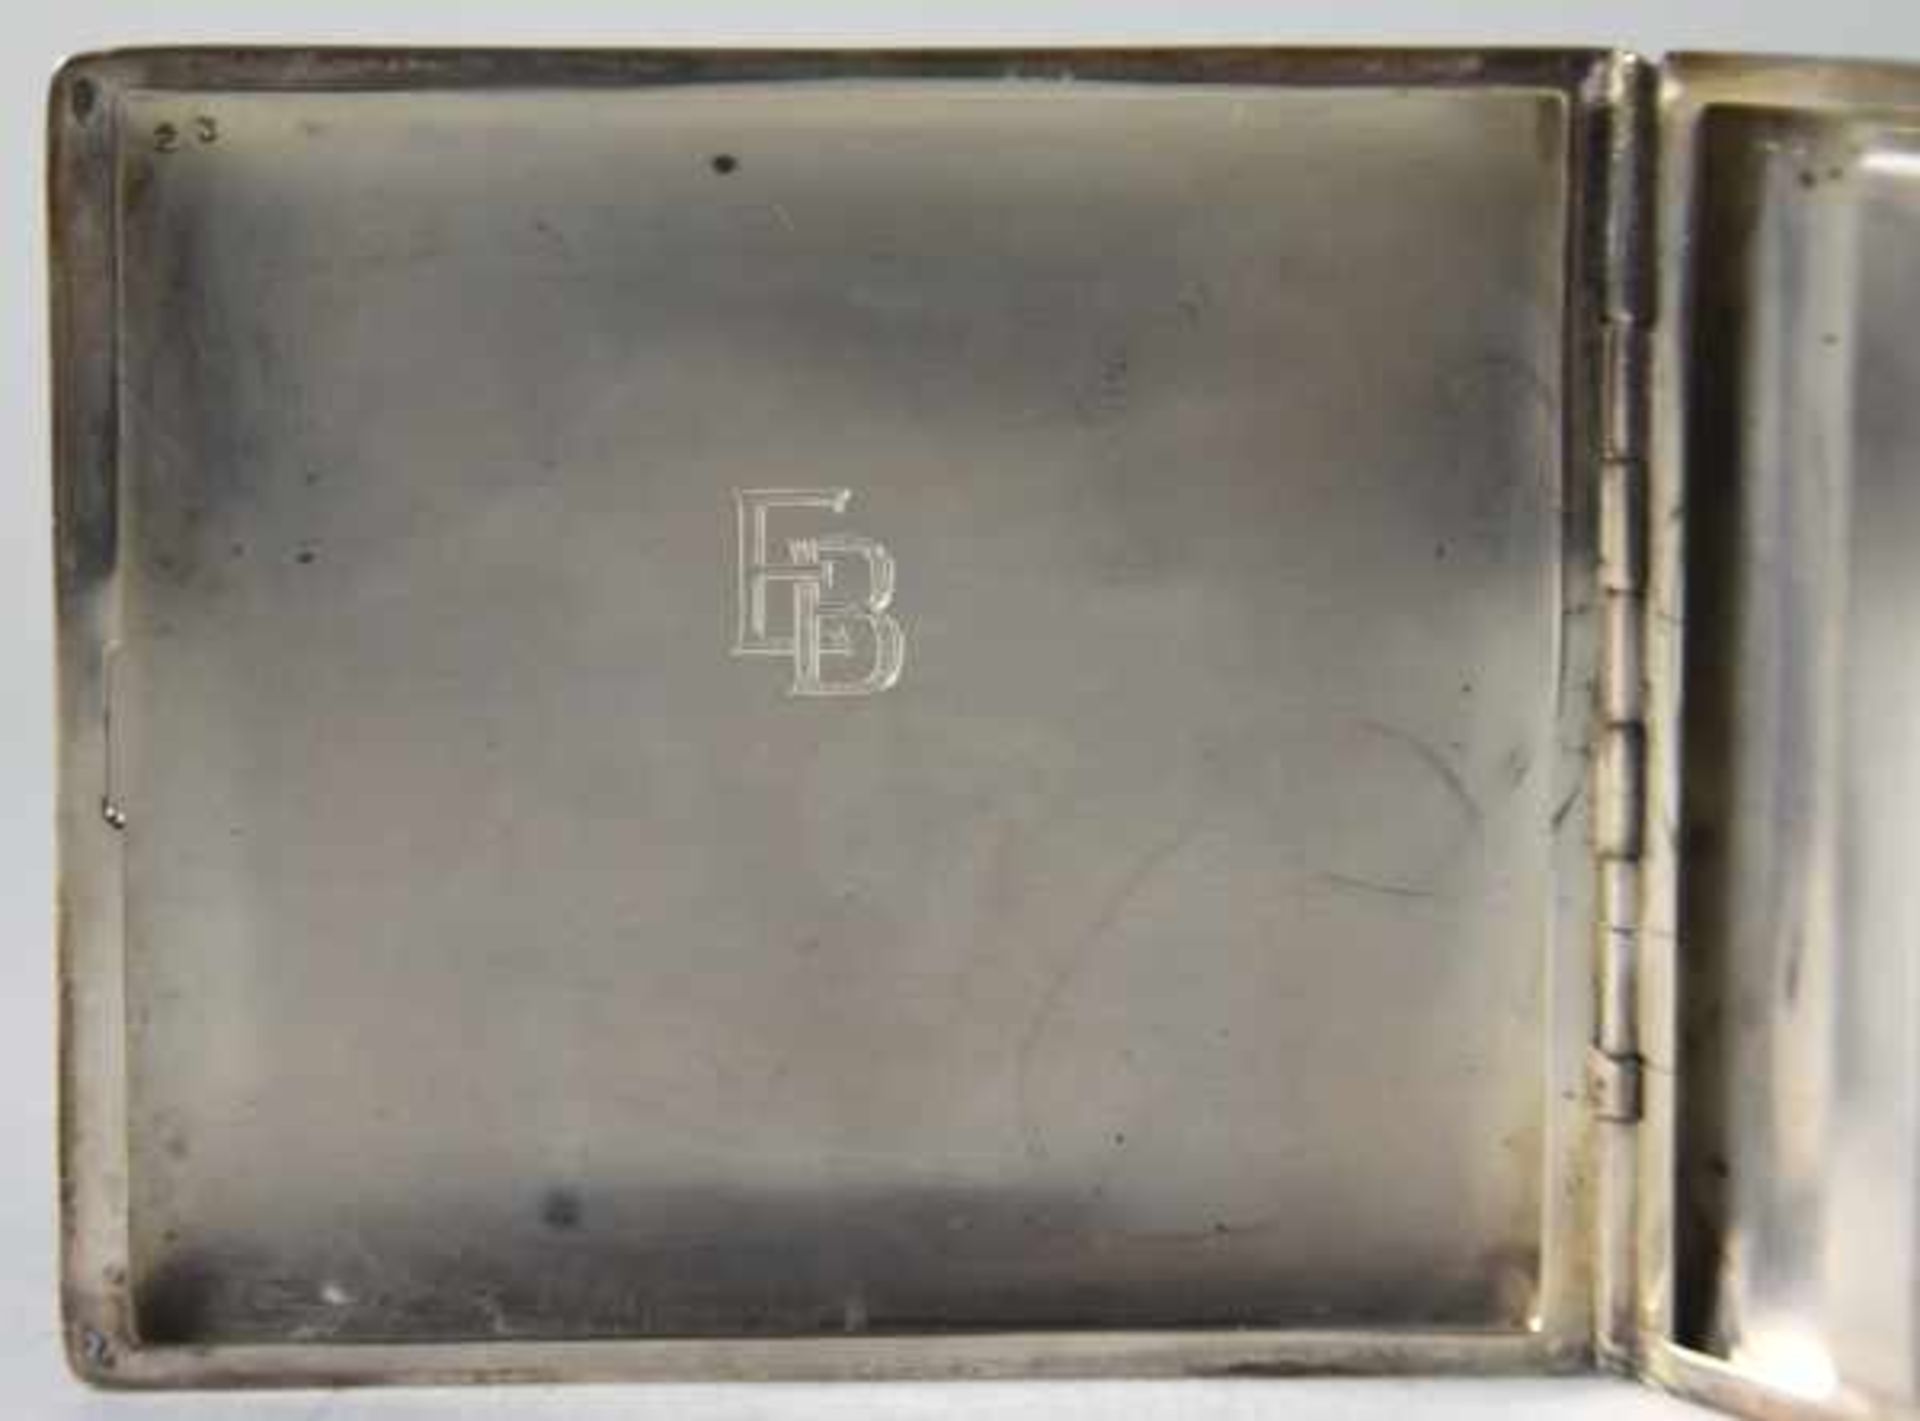 ZIGARETTENETUI rechteckige Form, im Innendeckel Monogramm "EB", Silber 925, 95gr, 9x7,5cm- - -23. - Bild 4 aus 4